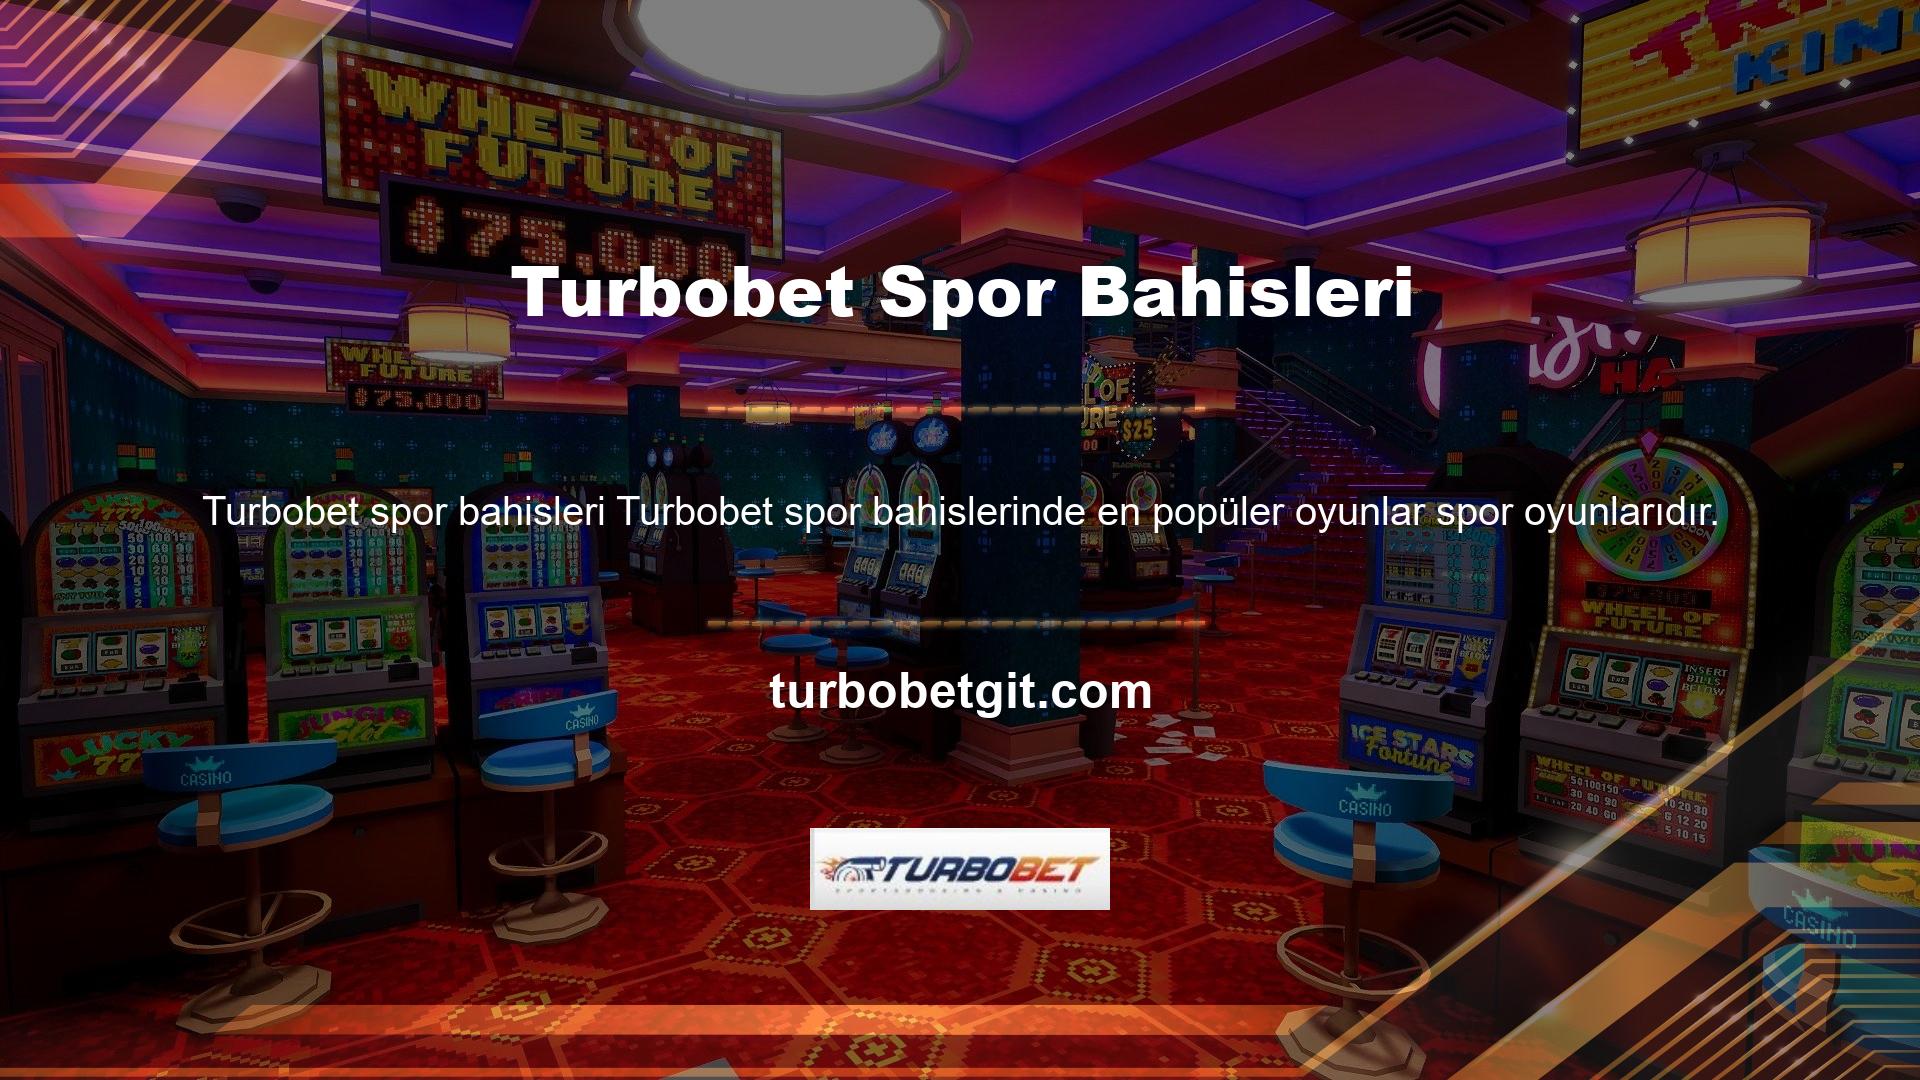 Turbobet spor bahisleri bu nedenle bu sitede mevcut olan spor oyunlarından biridir